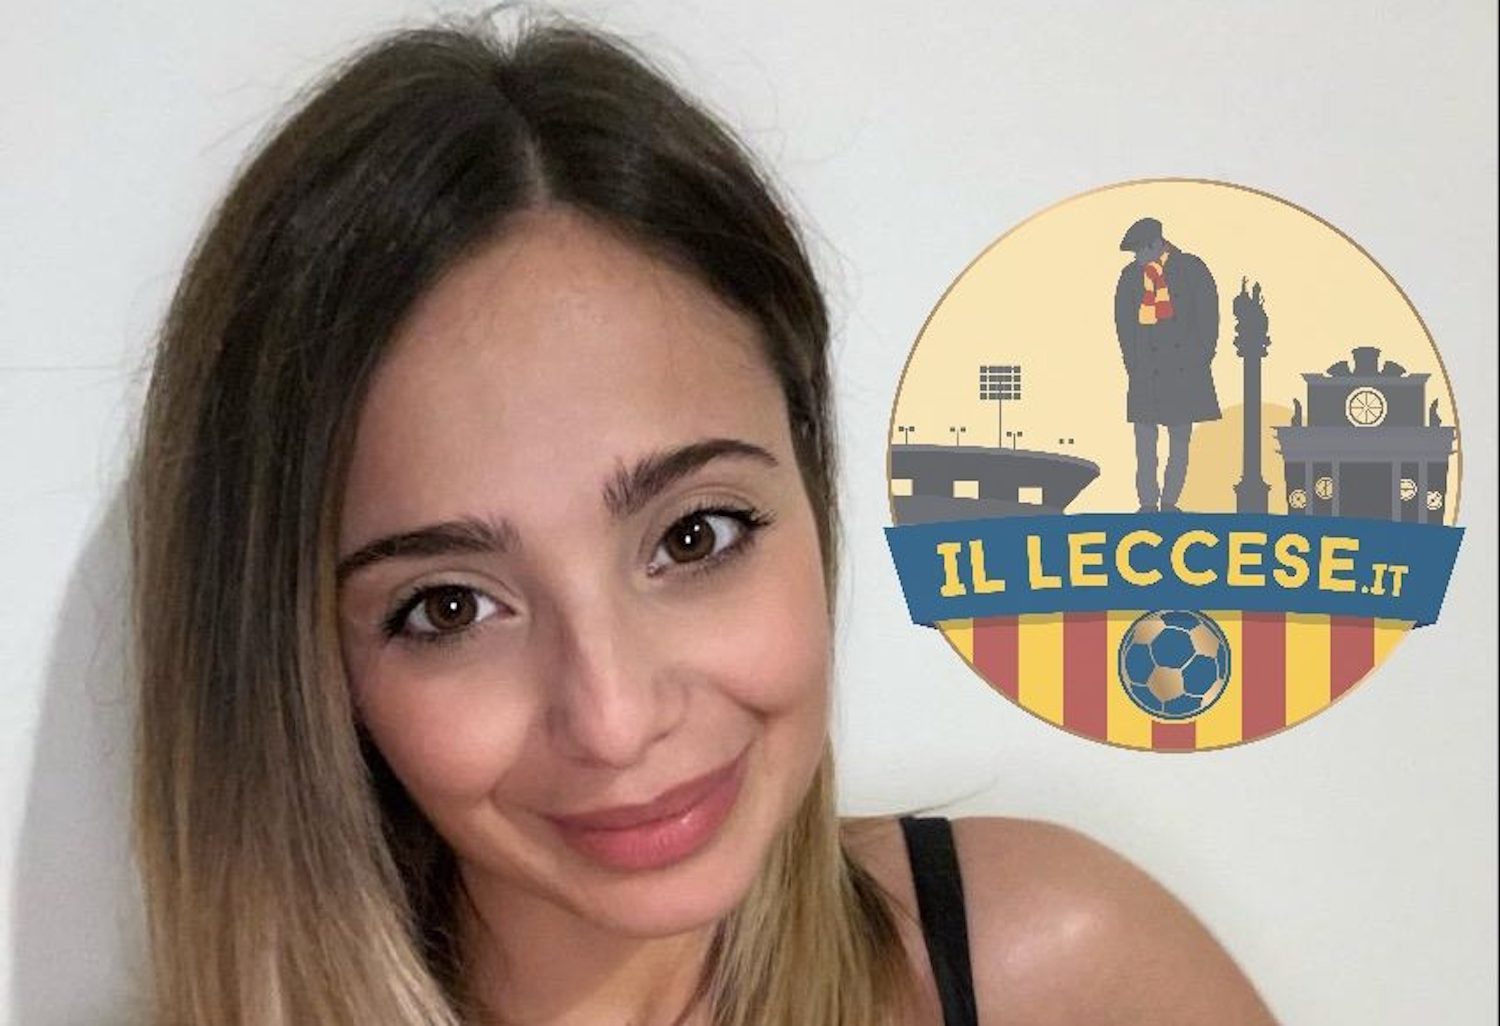 «Taci… ti devono sfregiare con l’acido…». Insulti e minacce contro la giornalista dopo Roma Lecce: «Ogni donna dovrebbe denunciare»